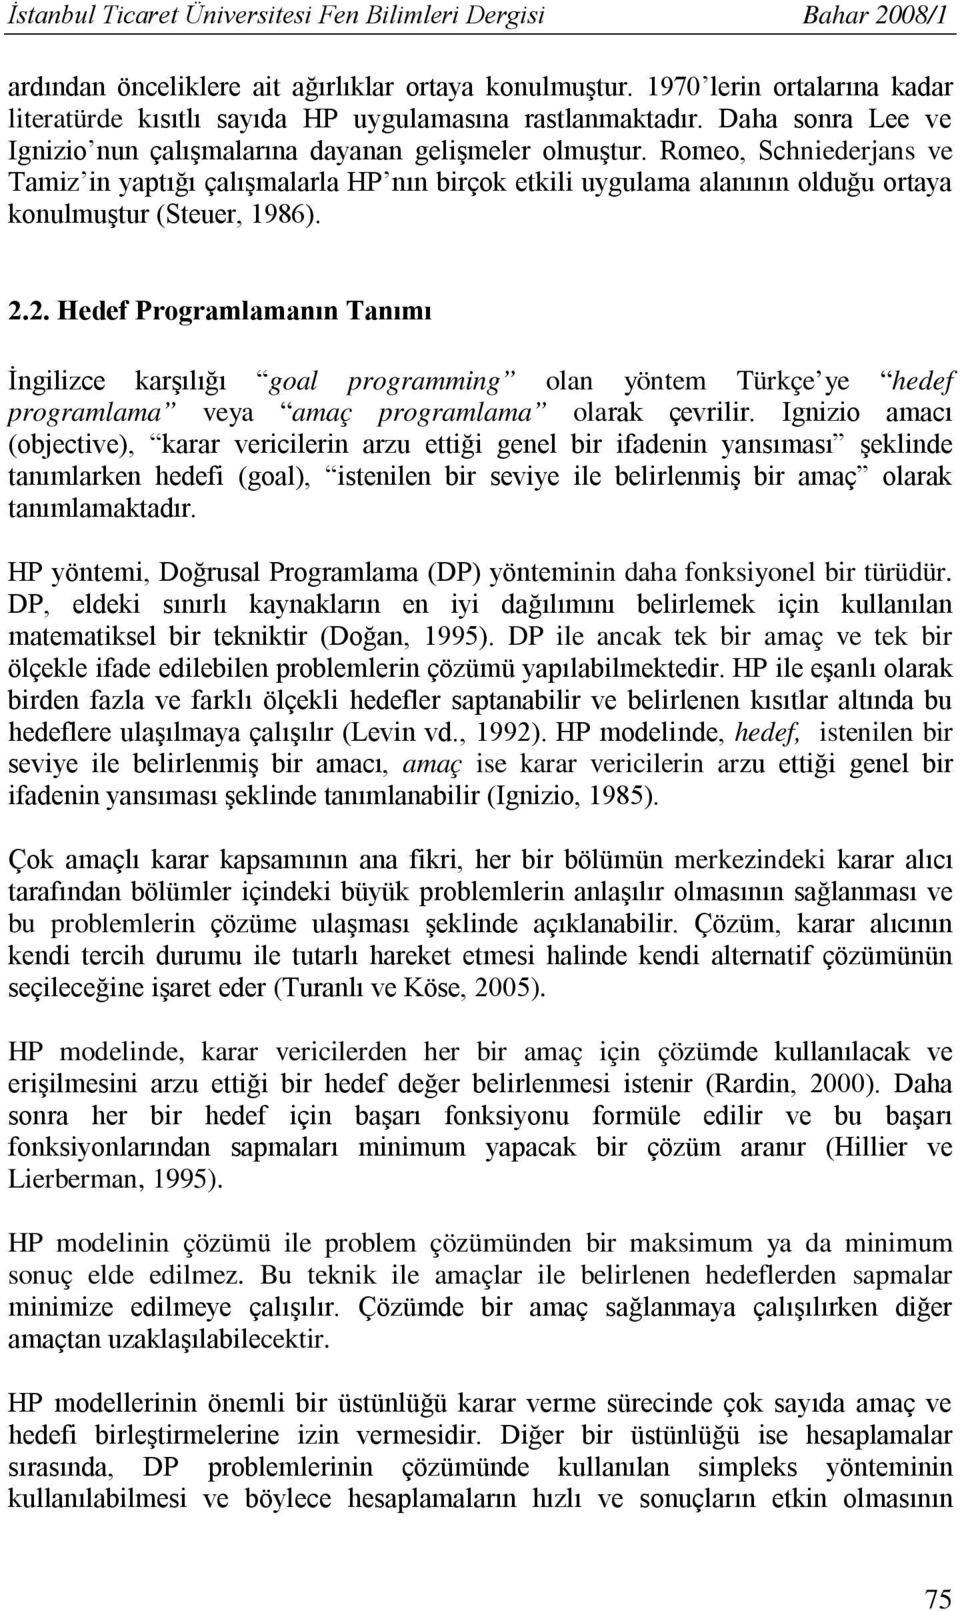 Romeo, Schniederjans ve Tamiz in yaptığı çalışmalarla HP nın birçok etkili uygulama alanının olduğu ortaya konulmuştur (Steuer, 1986). 2.